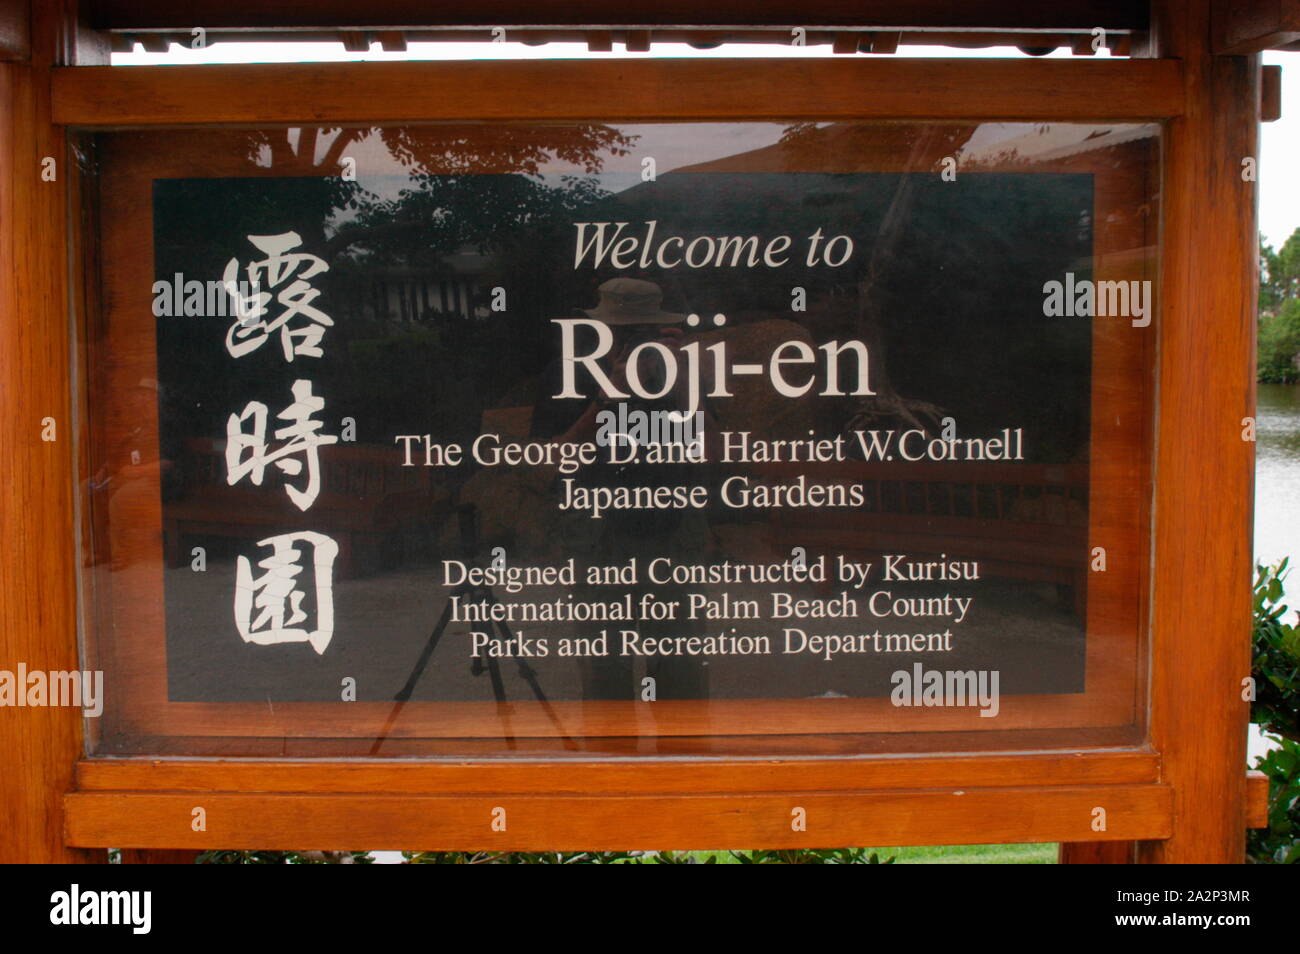 Cartel de bienvenida a los visitantes roji-en, parte de los Jardines Japoneses, Morikami Delray Beach, en el condado de Palm Beach, Florida Foto de stock